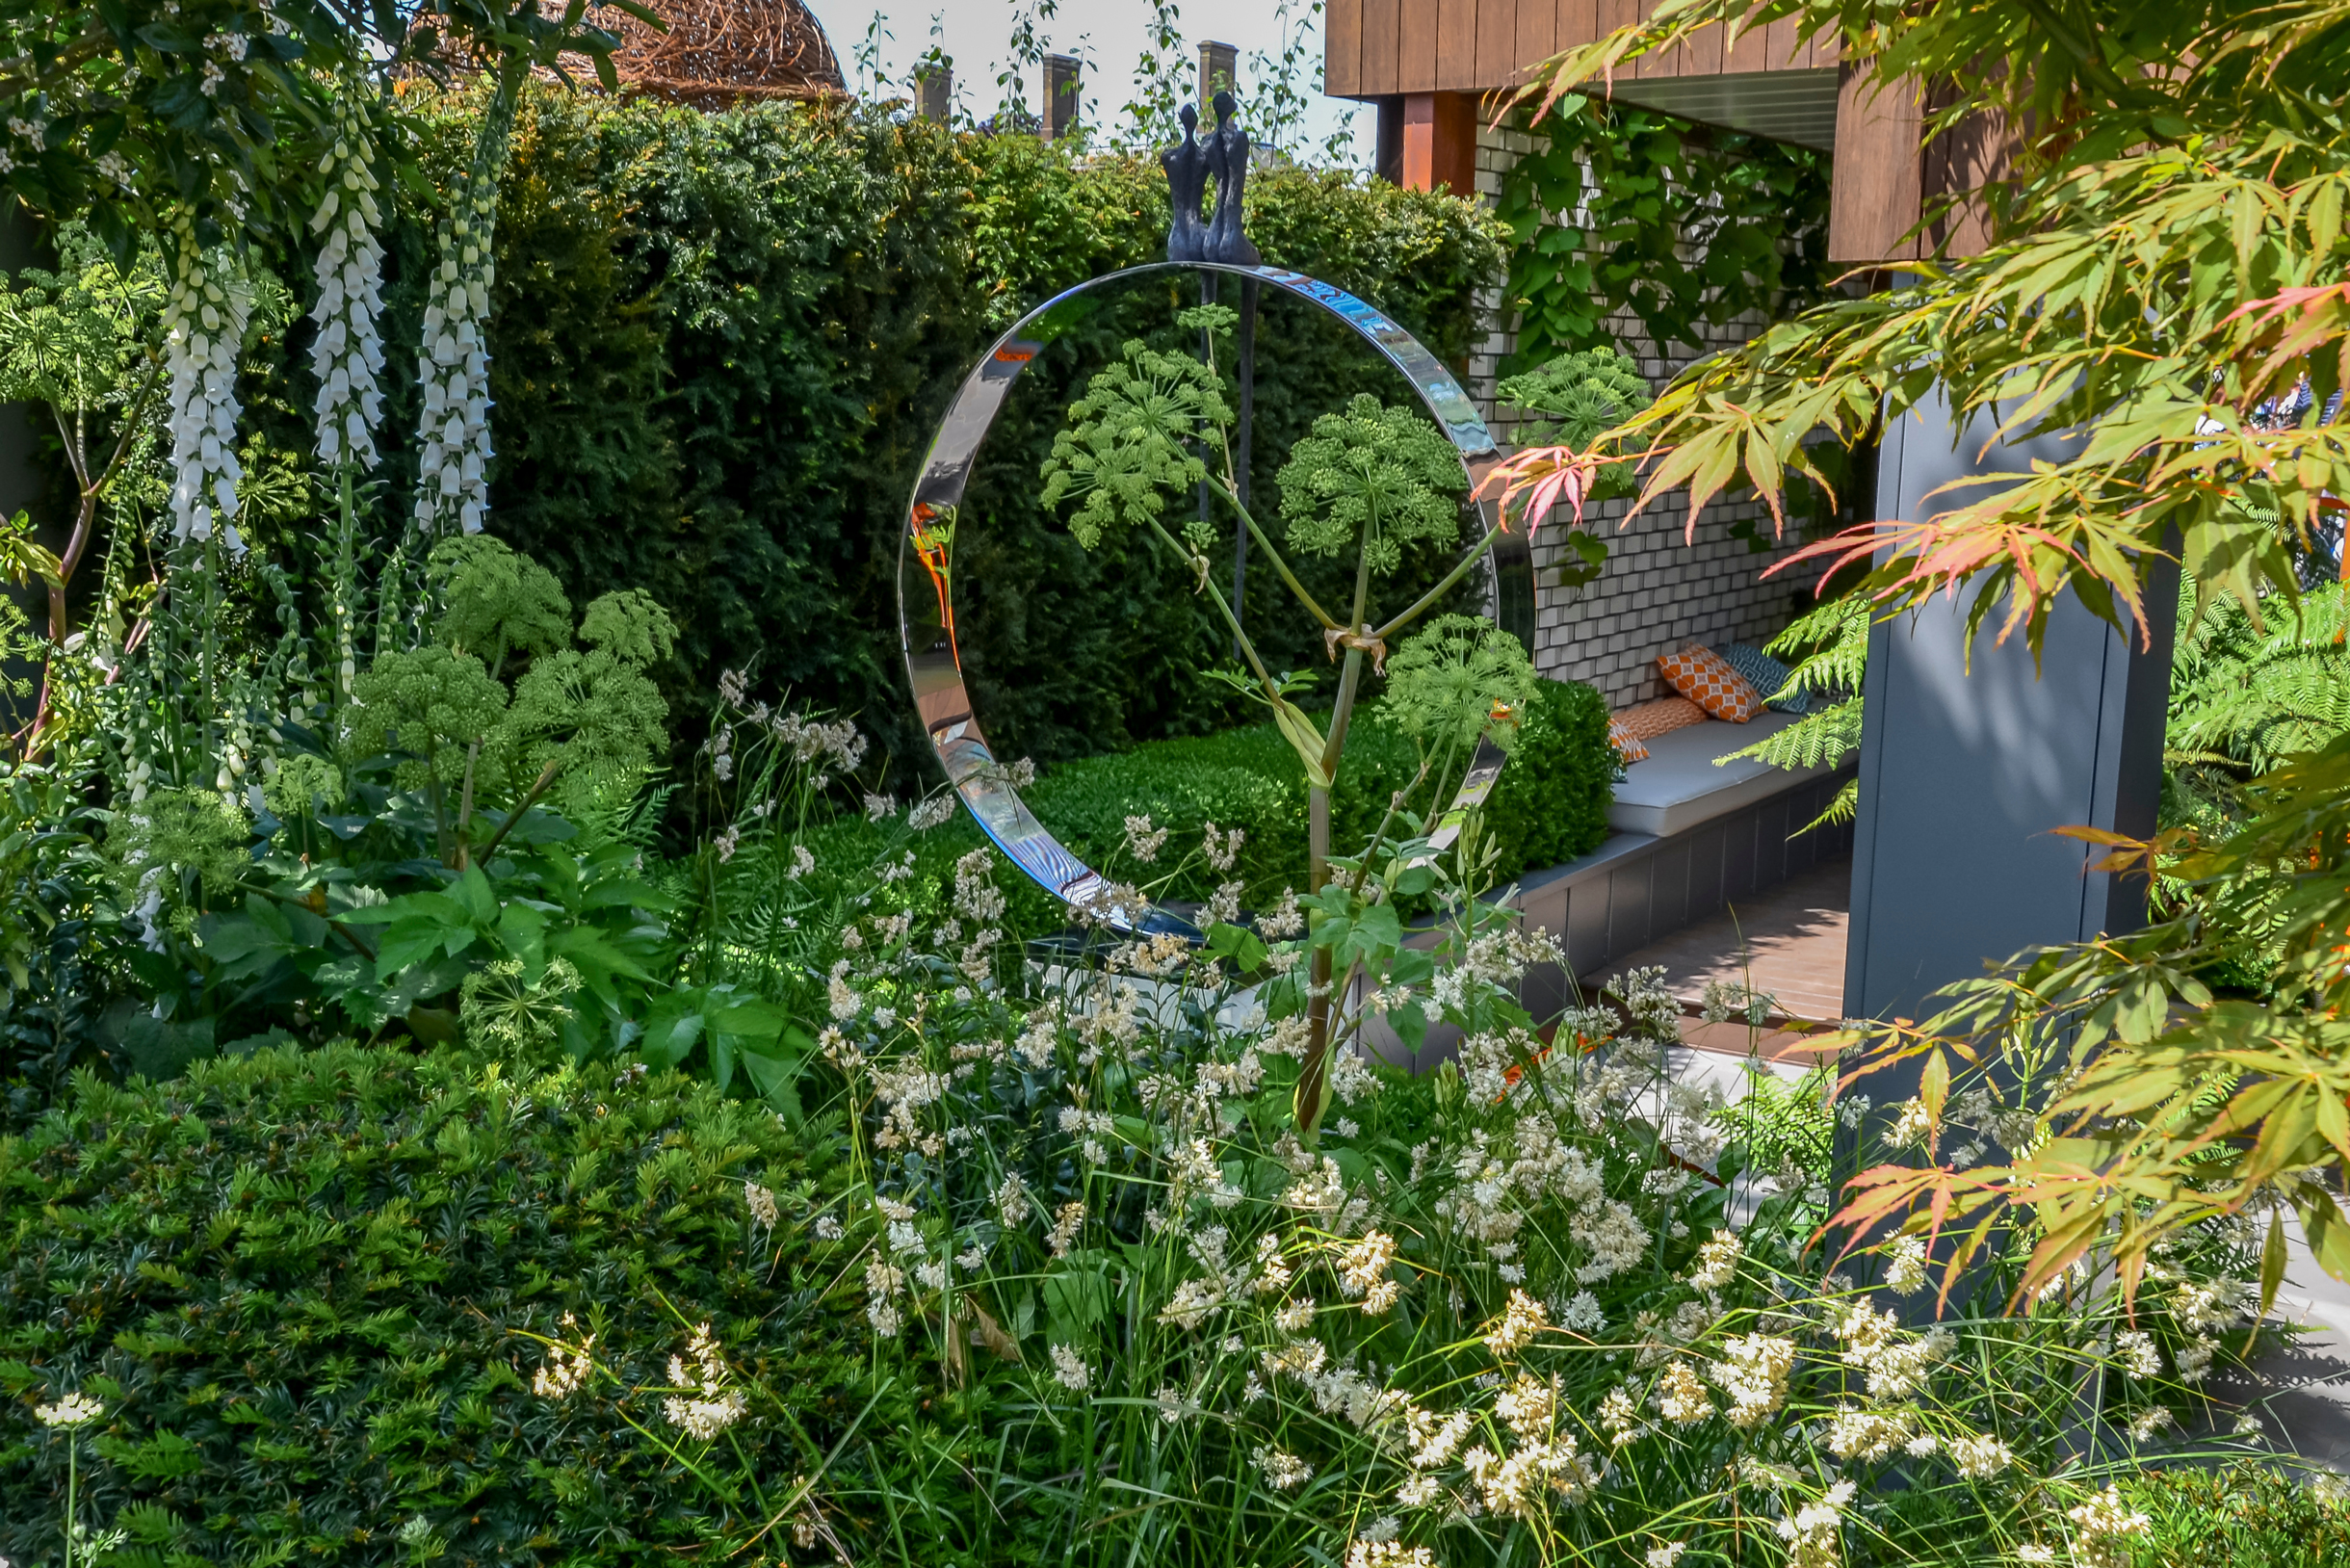 Сад в природном стиле — это не только деревяшки, камешки и всякое старье. Вот кто⁠-⁠то решил поставить в саду зеркальное кольцо. Прелесть этого стиля в том, что он прекрасно сочетается с любой архитектурой. Фотография: LapaiIrKrapai / Shutterstock / FOTODOM